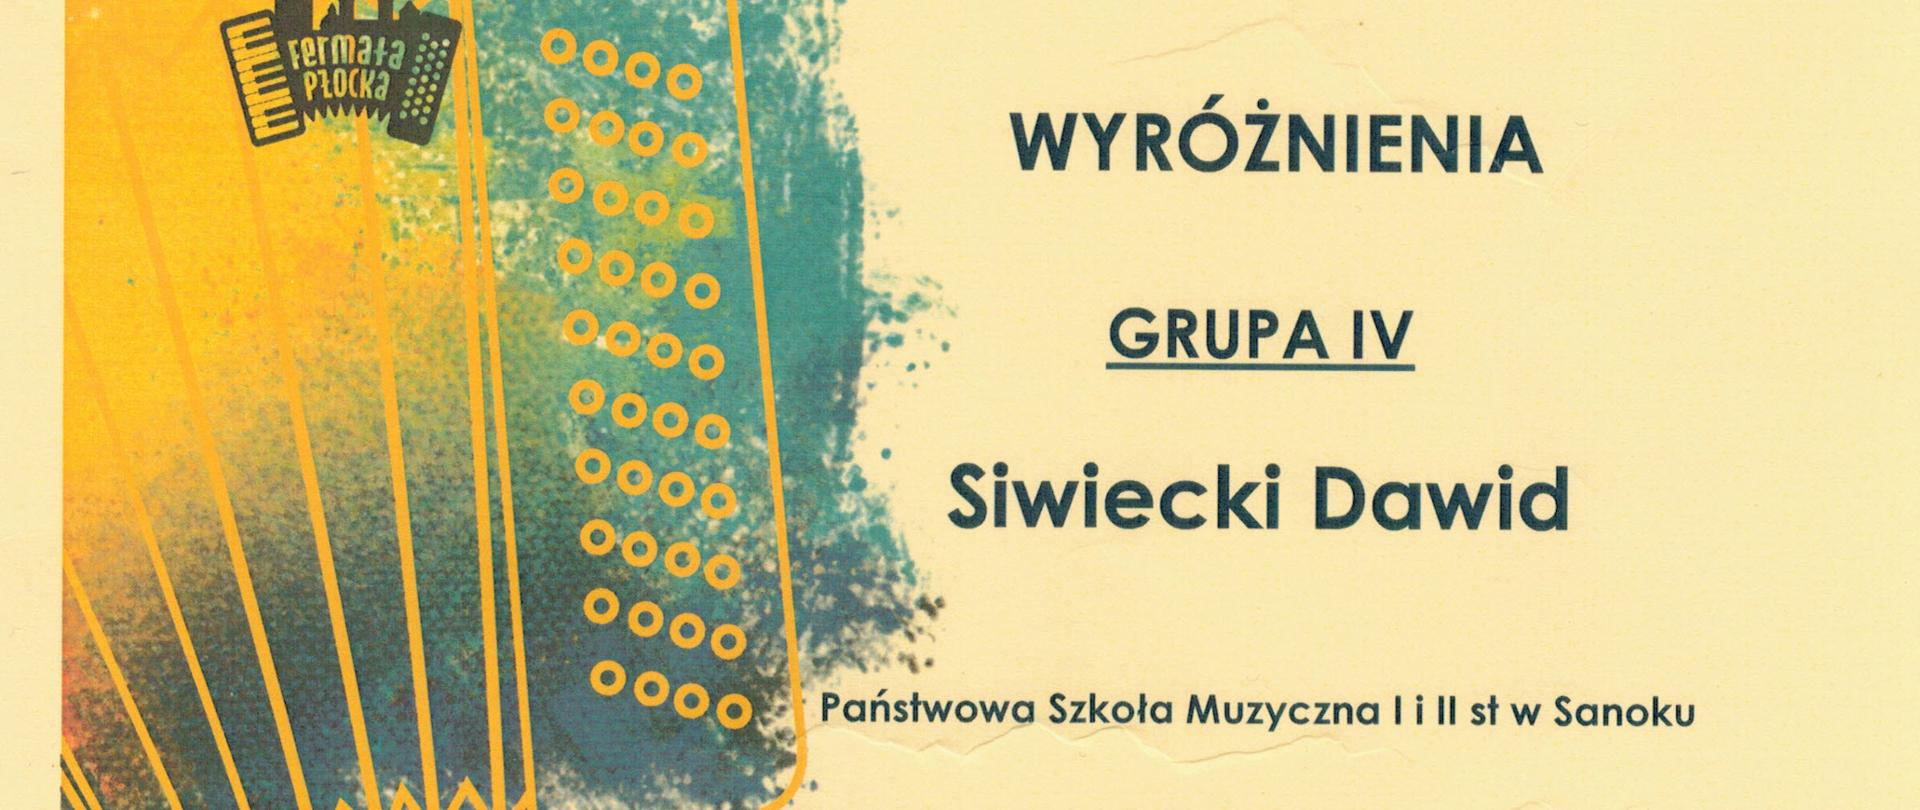 Dyplom wyróżnienie - Dawid Siwiecki - Płock 30 listopada 2023r. Czarne litery na żółtym tle, z lewej strony akordeon - logo konkursu.